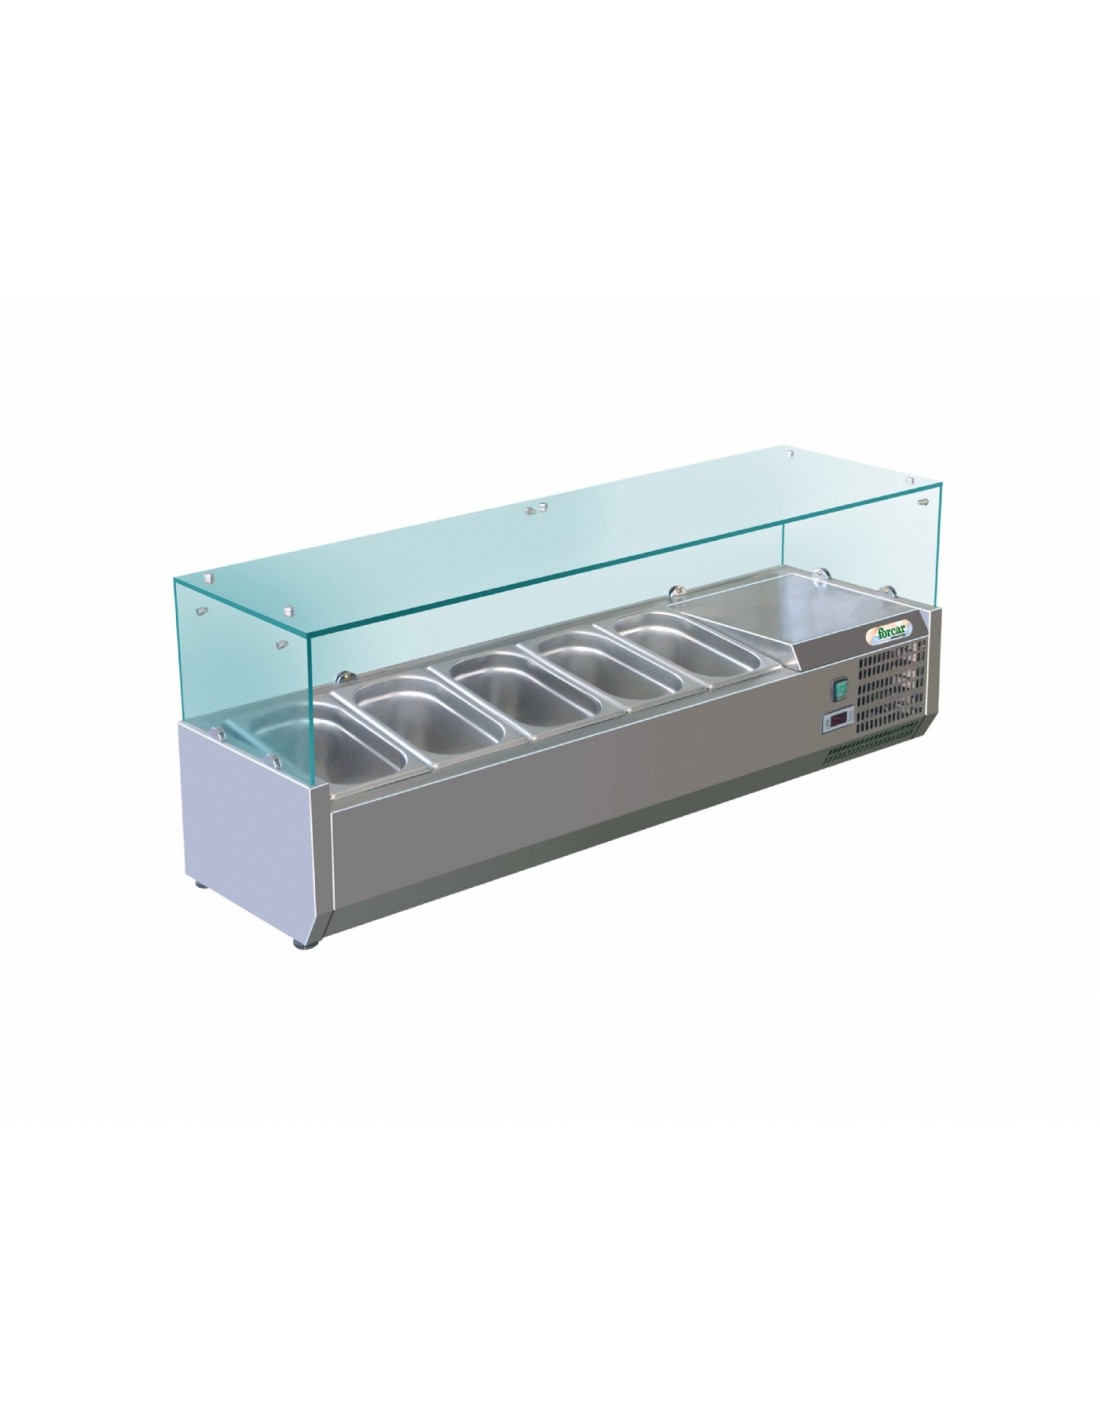 Vitrina refrigerada estante para ingredientes - Estático - Capacidad 5 bandejas GN 1/3 + 1 GN 1/2 -cm 150 x 38 x 44,5h